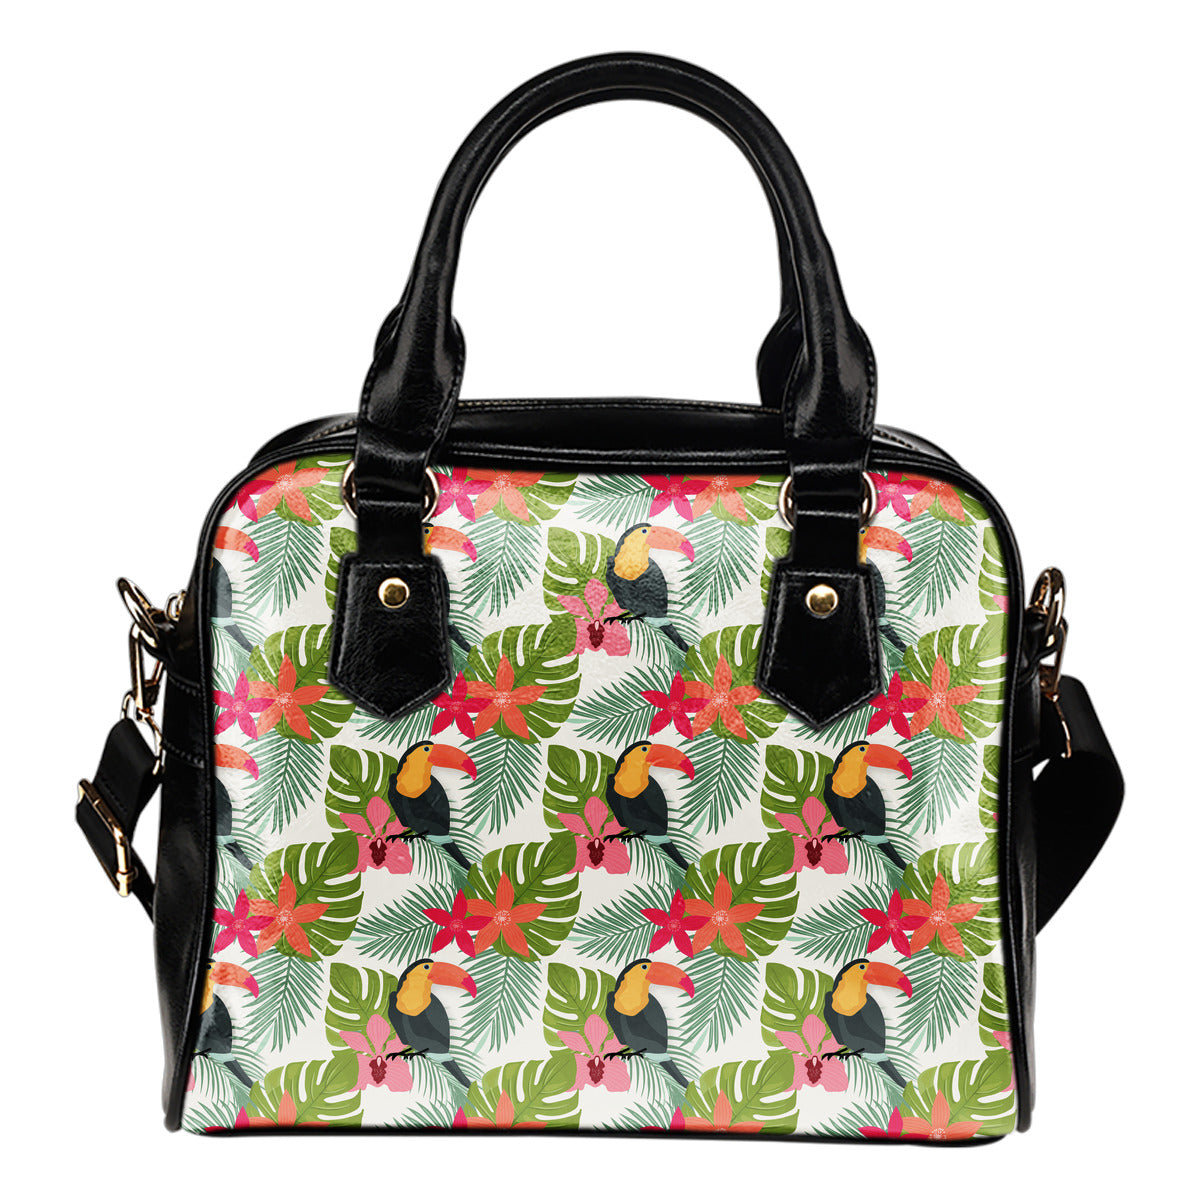 Tropical (A7) Theme Women Fashion Shoulder Handbag Black Vegan Faux Leather